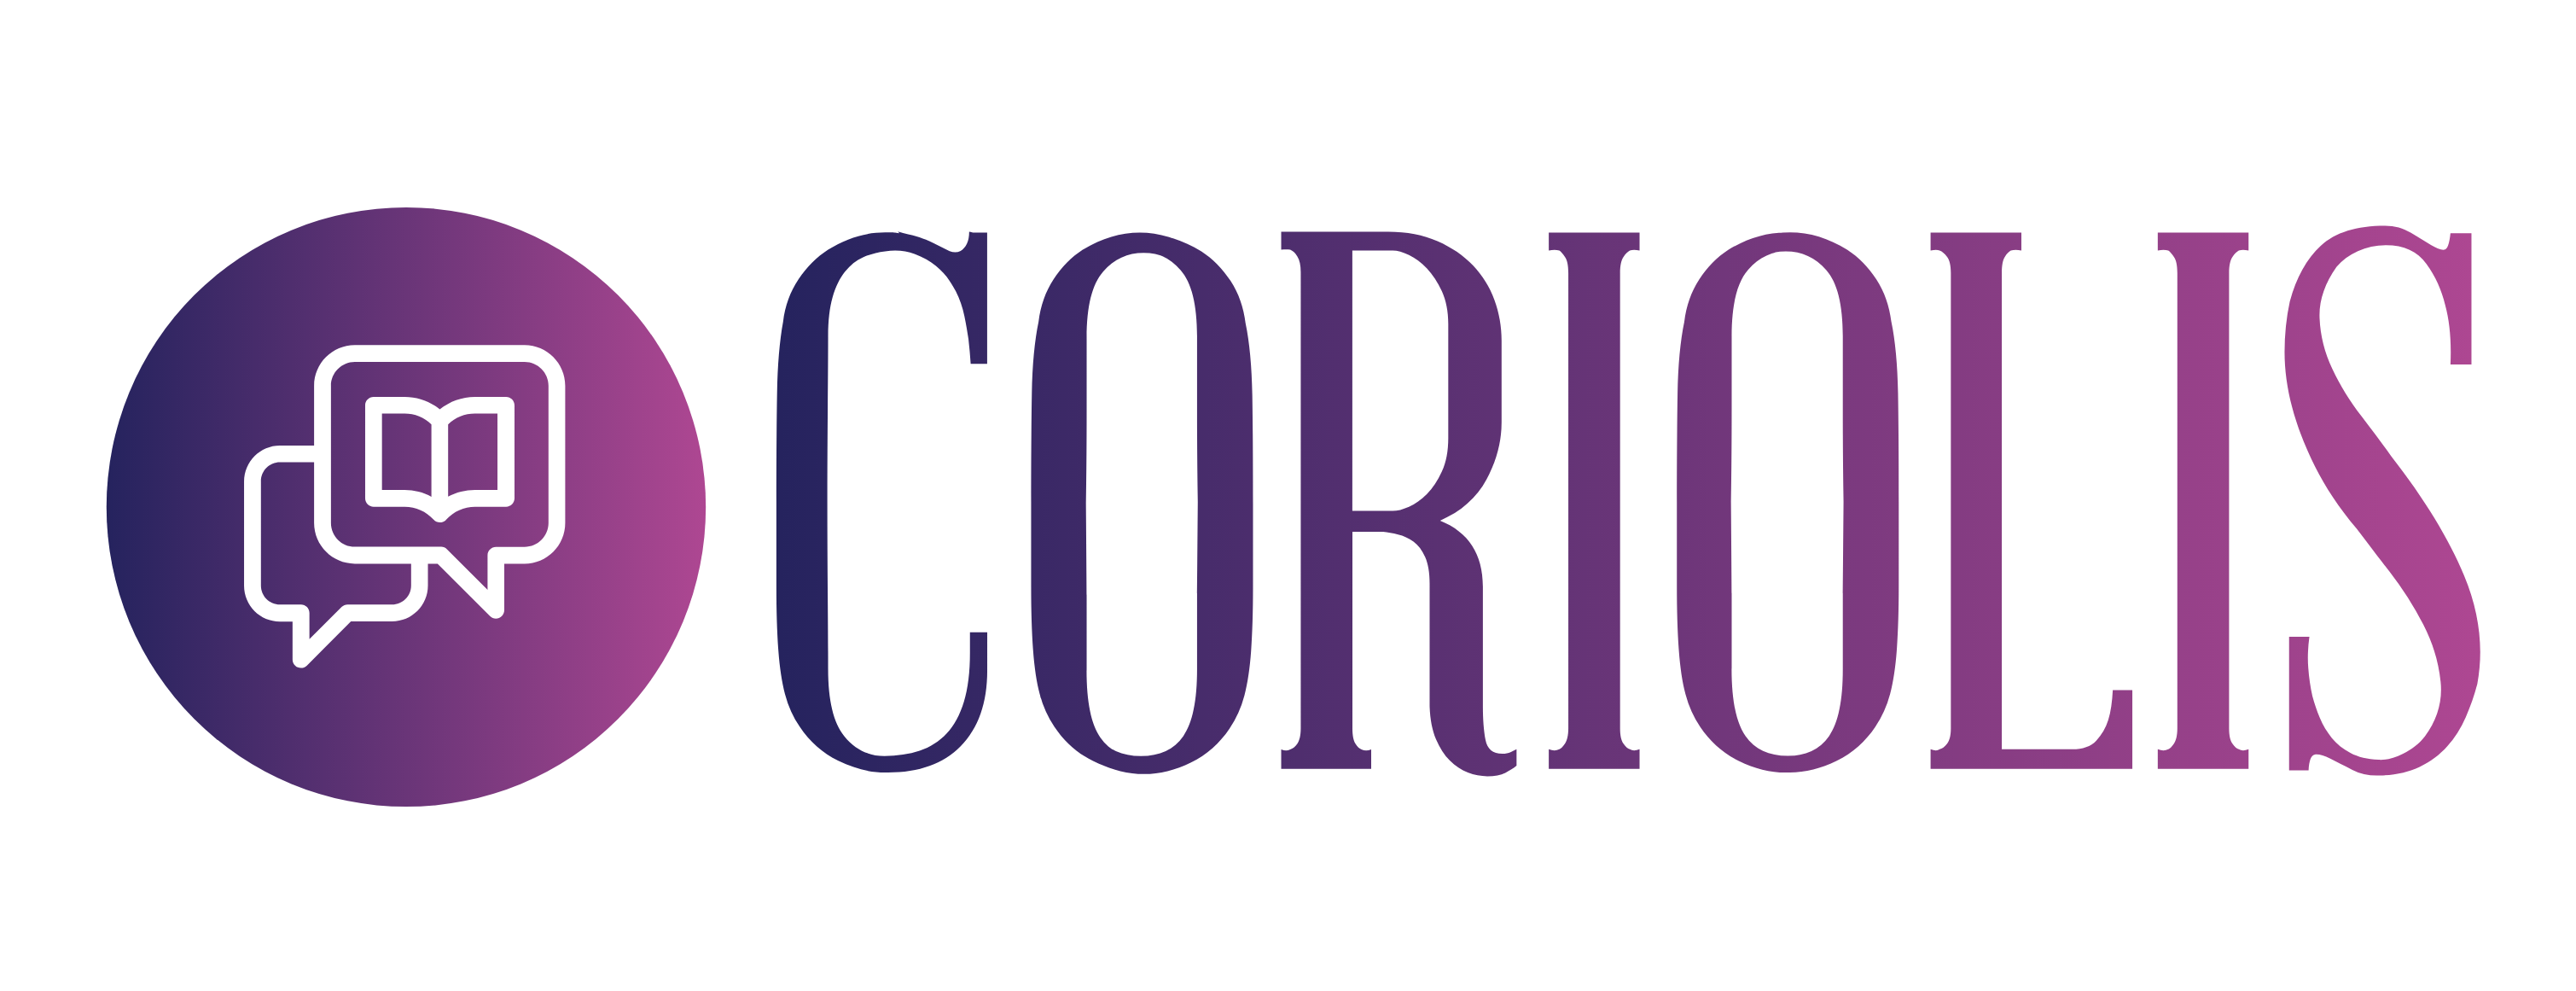 Coriolis Company